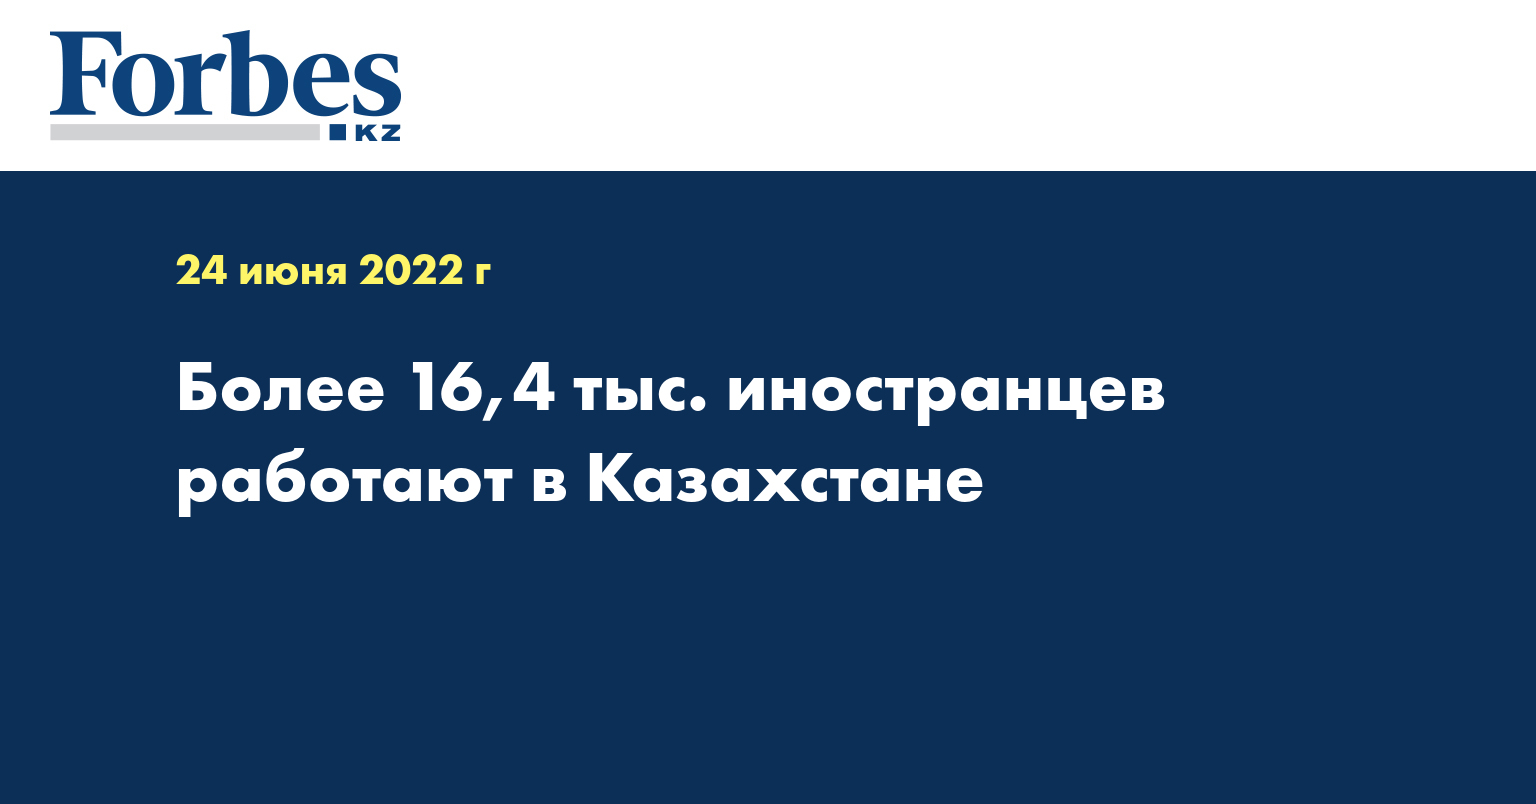 Более 16,4 тыс. иностранцев работают в Казахстане